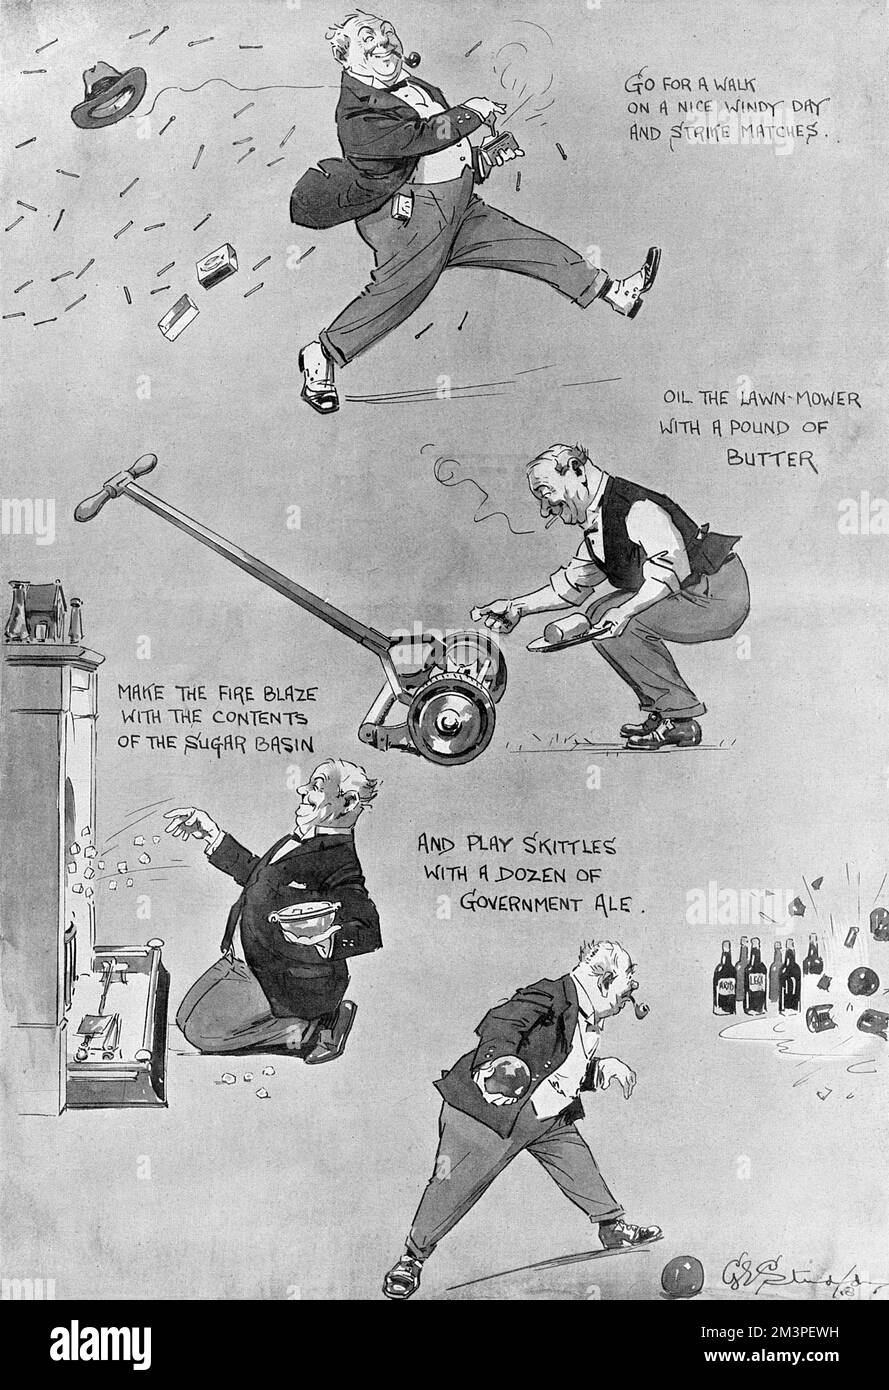 Caricature de George Studdy montrant un gent se livrant volontairement à des comportements inutiles, un soulagement bienvenu après des années de contrôle alimentaire, de pénuries et de rationnement. Date: 1918 Banque D'Images